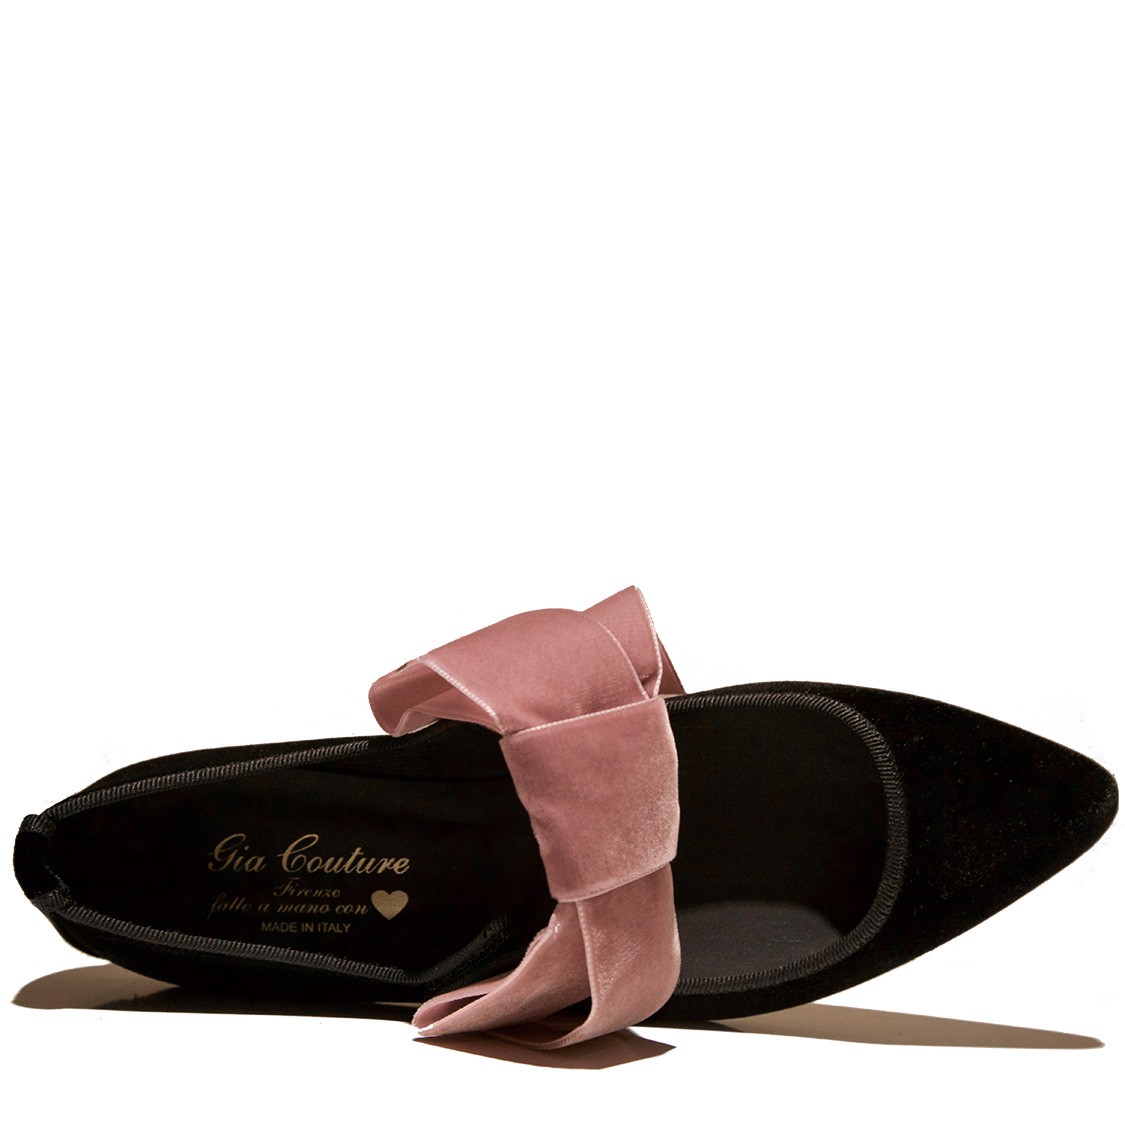 shop Gia Couture Saldi Scarpe: Ballerina Gia Couture, in velluto nero, a punta, con fiocco rosa antico a contrasto, chiusura sopra con il velcro, pianta in pelle anatomica.

Composizione: 80% velluto, 20% pelle. number 1006